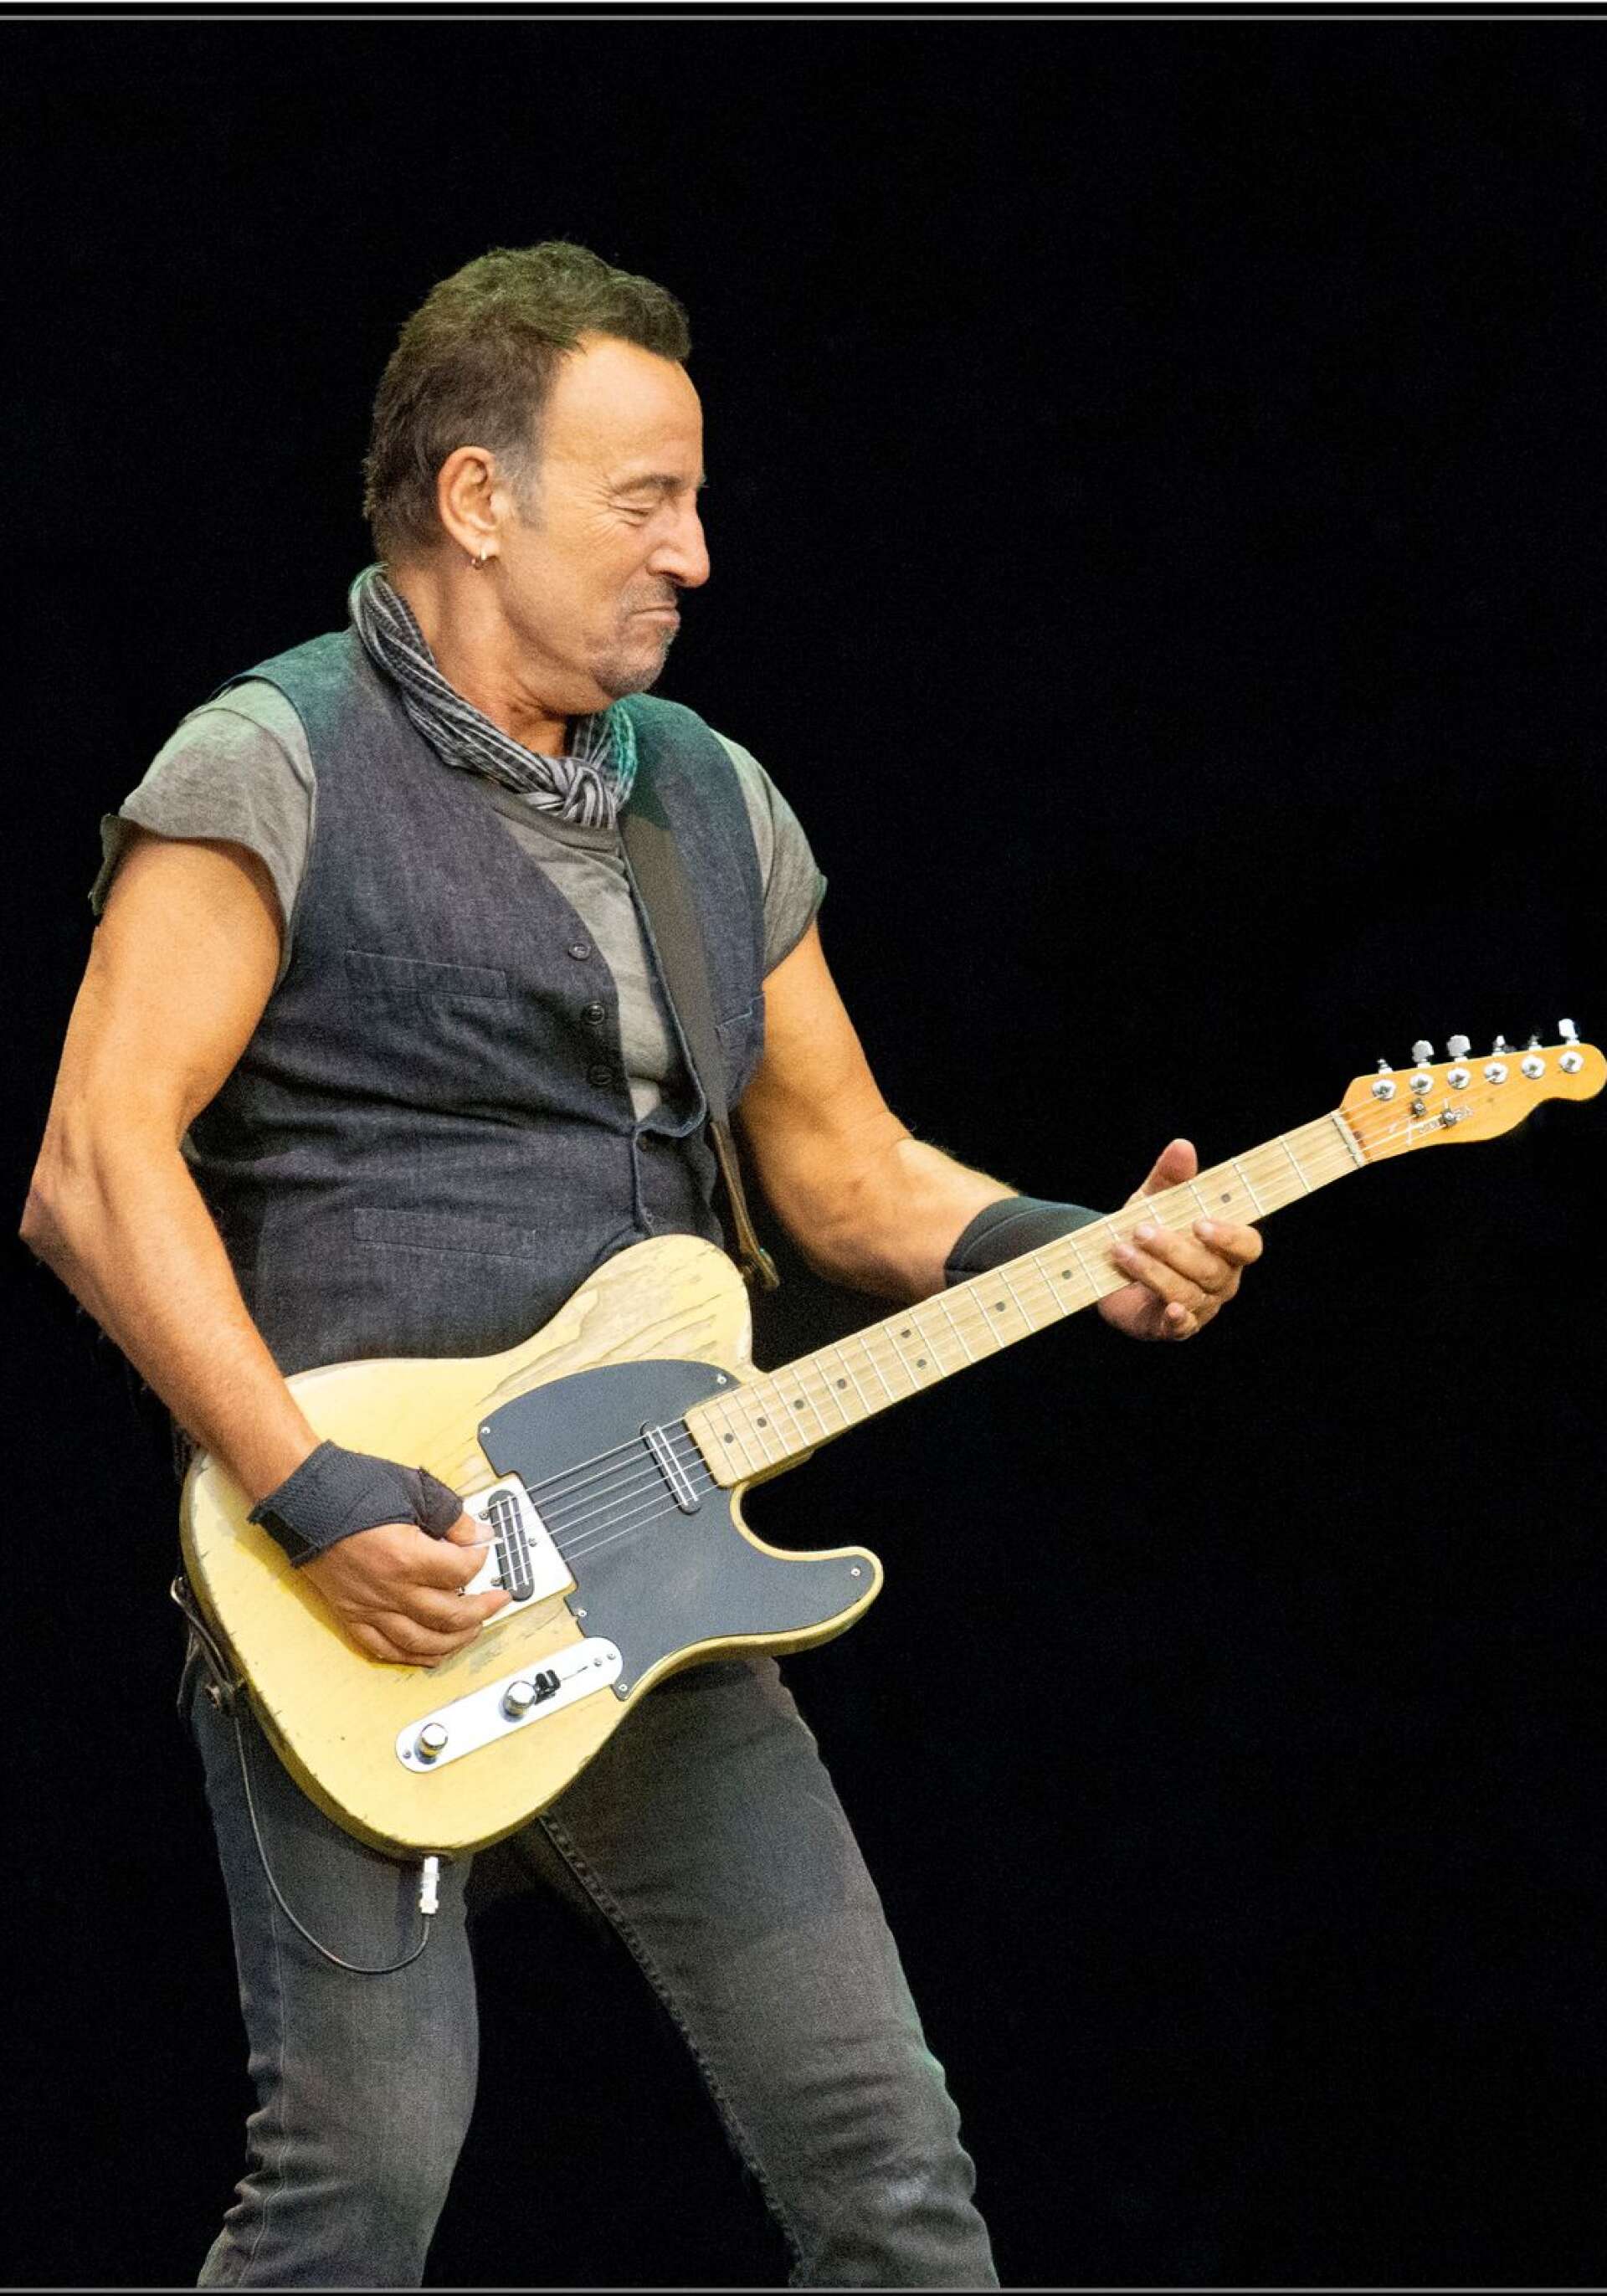 Bruce Springsteen i Trondheim 2016. En av många Bruce-bilder som Jan M Lundahl tagit genom åren. (Bilden är beskuren)